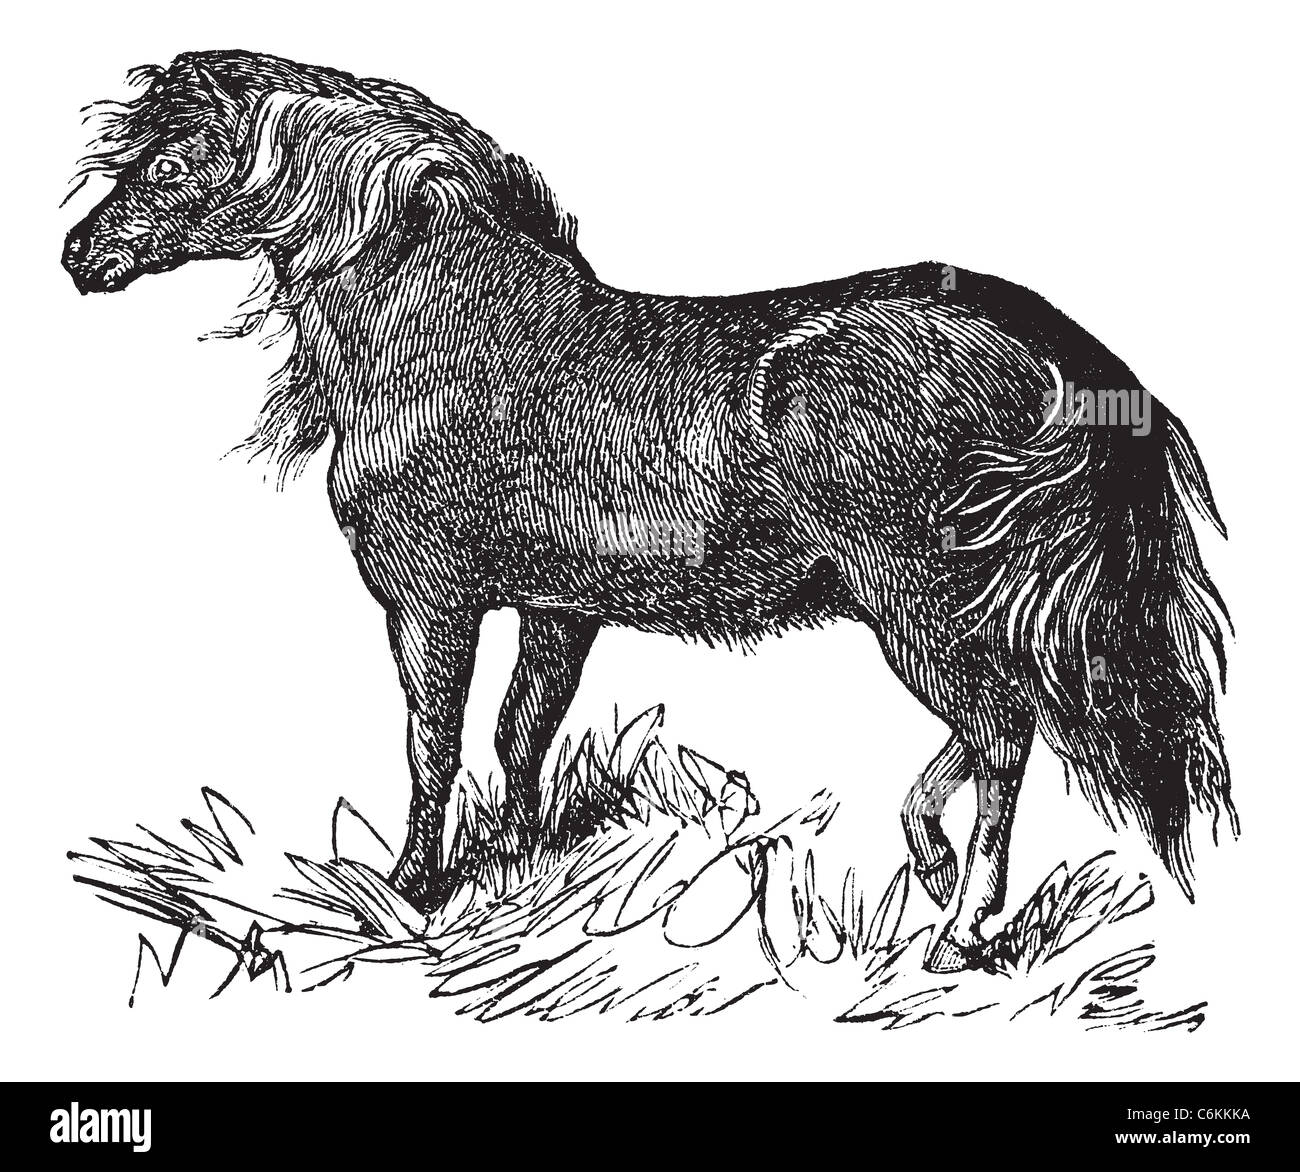 Shetland Pony or Equus ferus caballus, vintage engraving. Old engraved illustration of a Shetland Pony. Stock Photo